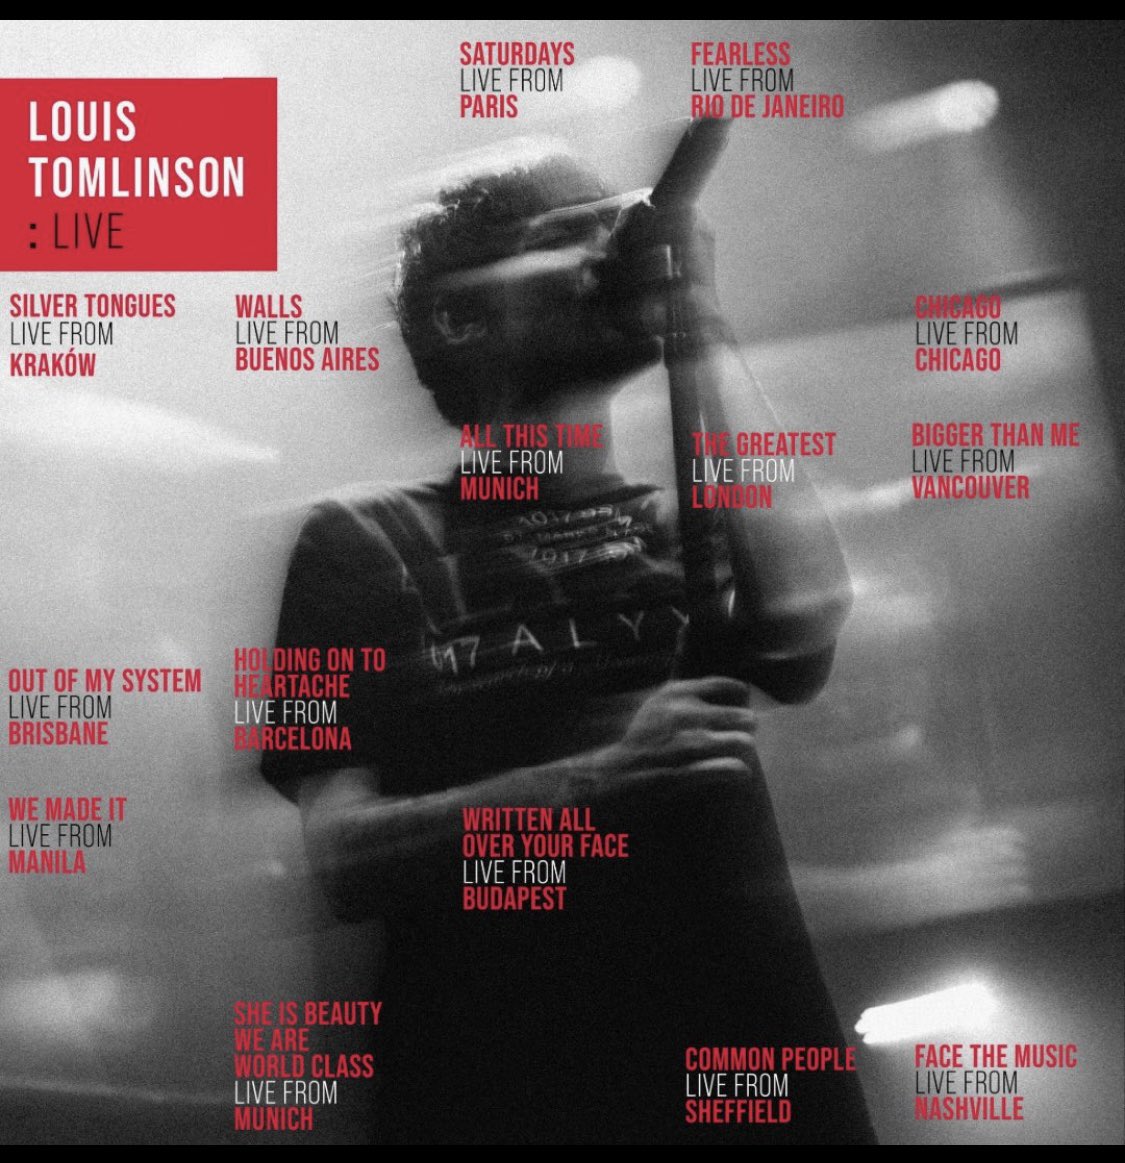 When Louis when? 
#LouisTomlinsonLive
#louisTomlinson #FaithInTheFuture #larrystylinson